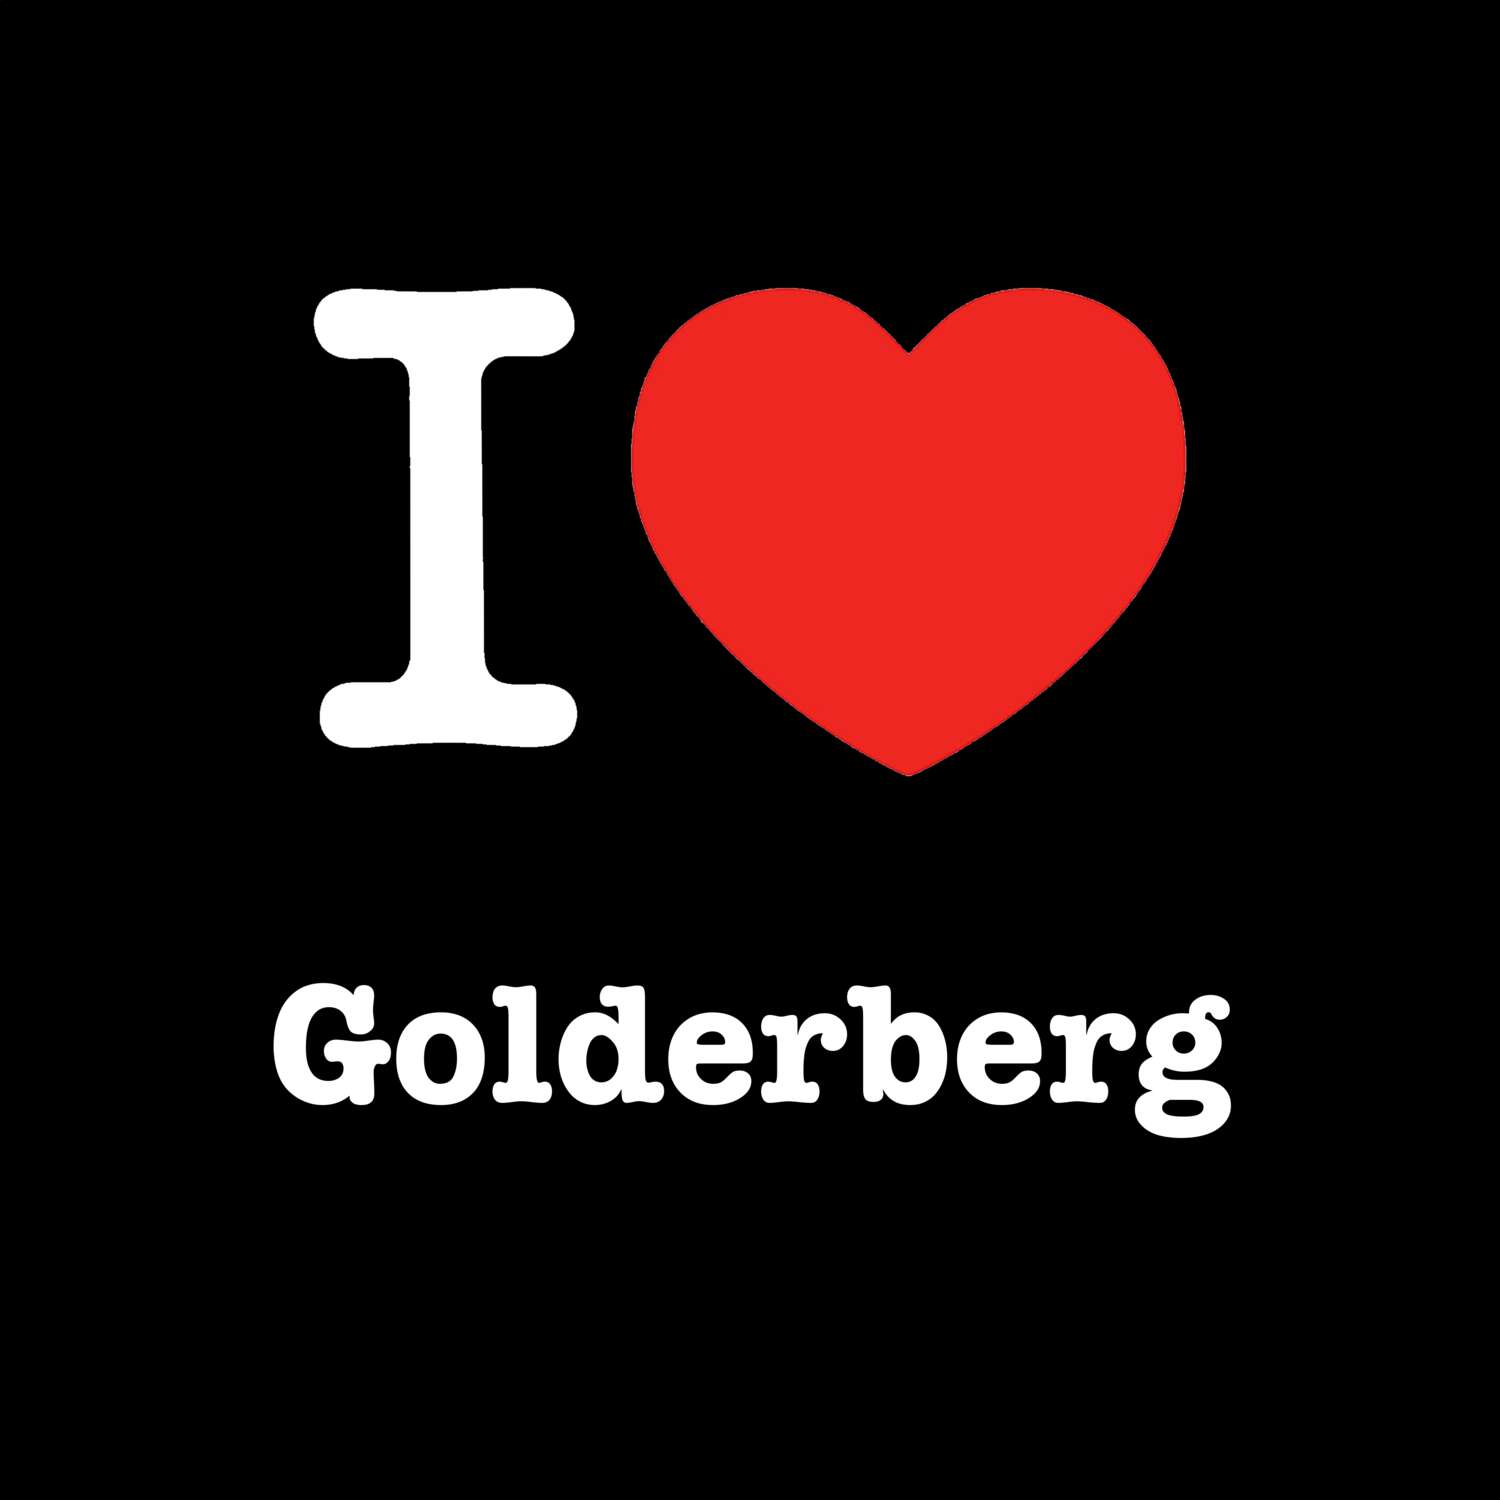 Golderberg T-Shirt »I love«